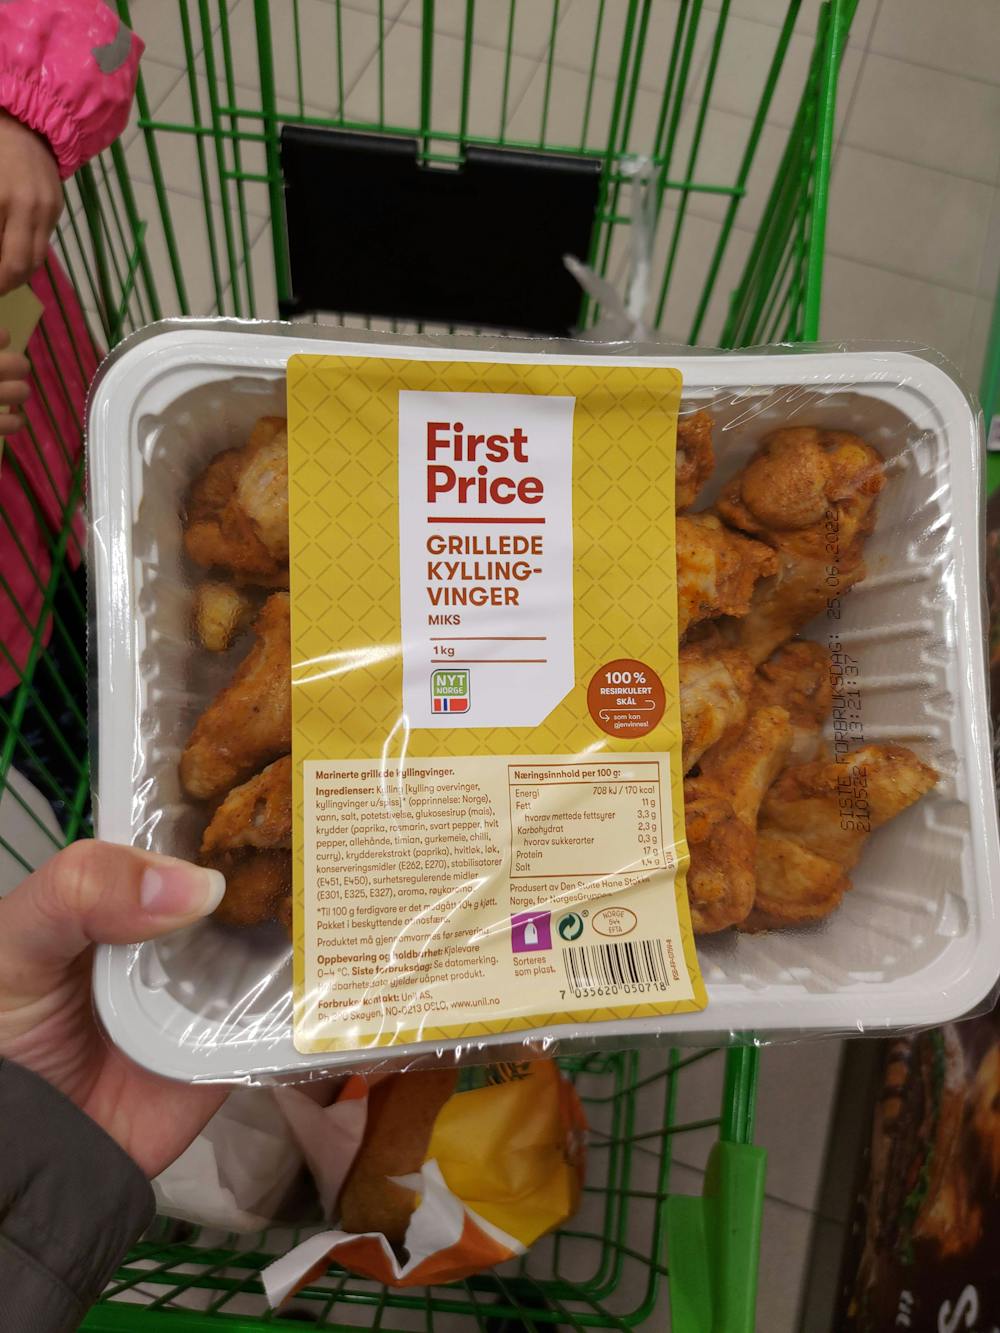 Grillede kyllingvinger, First price